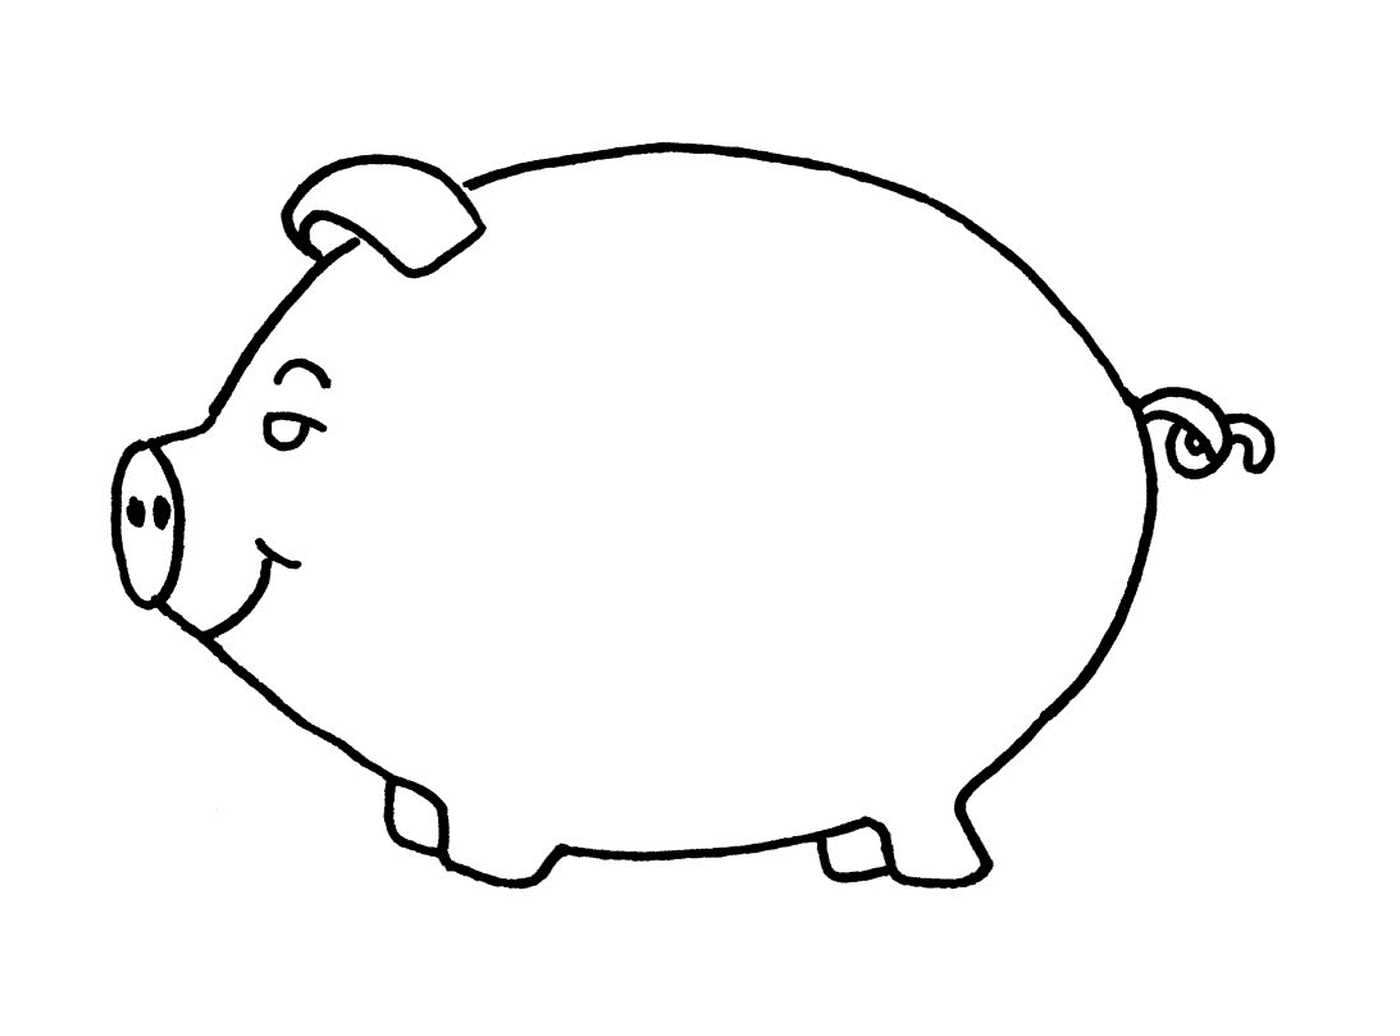  Um banco piggy em forma de porco 